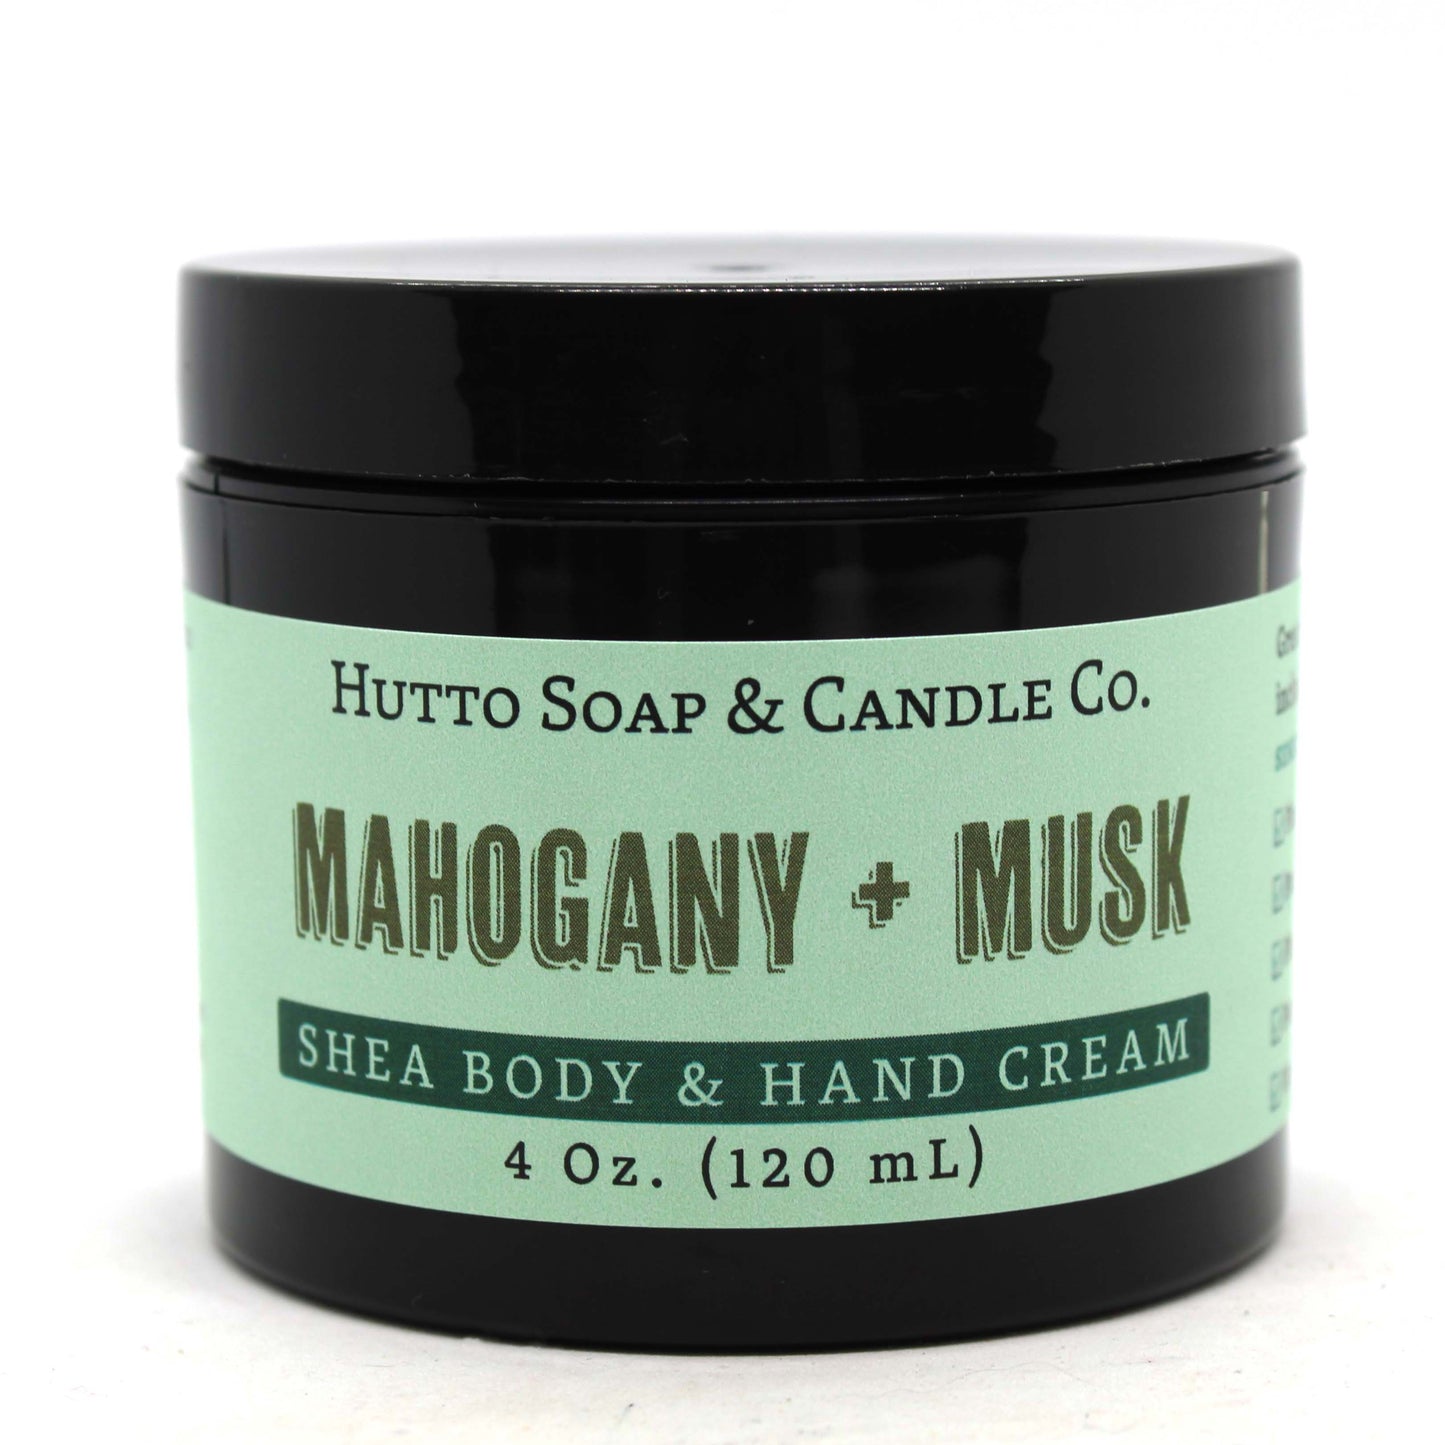 Mahogany + Musk Shea Body & Hand Cream